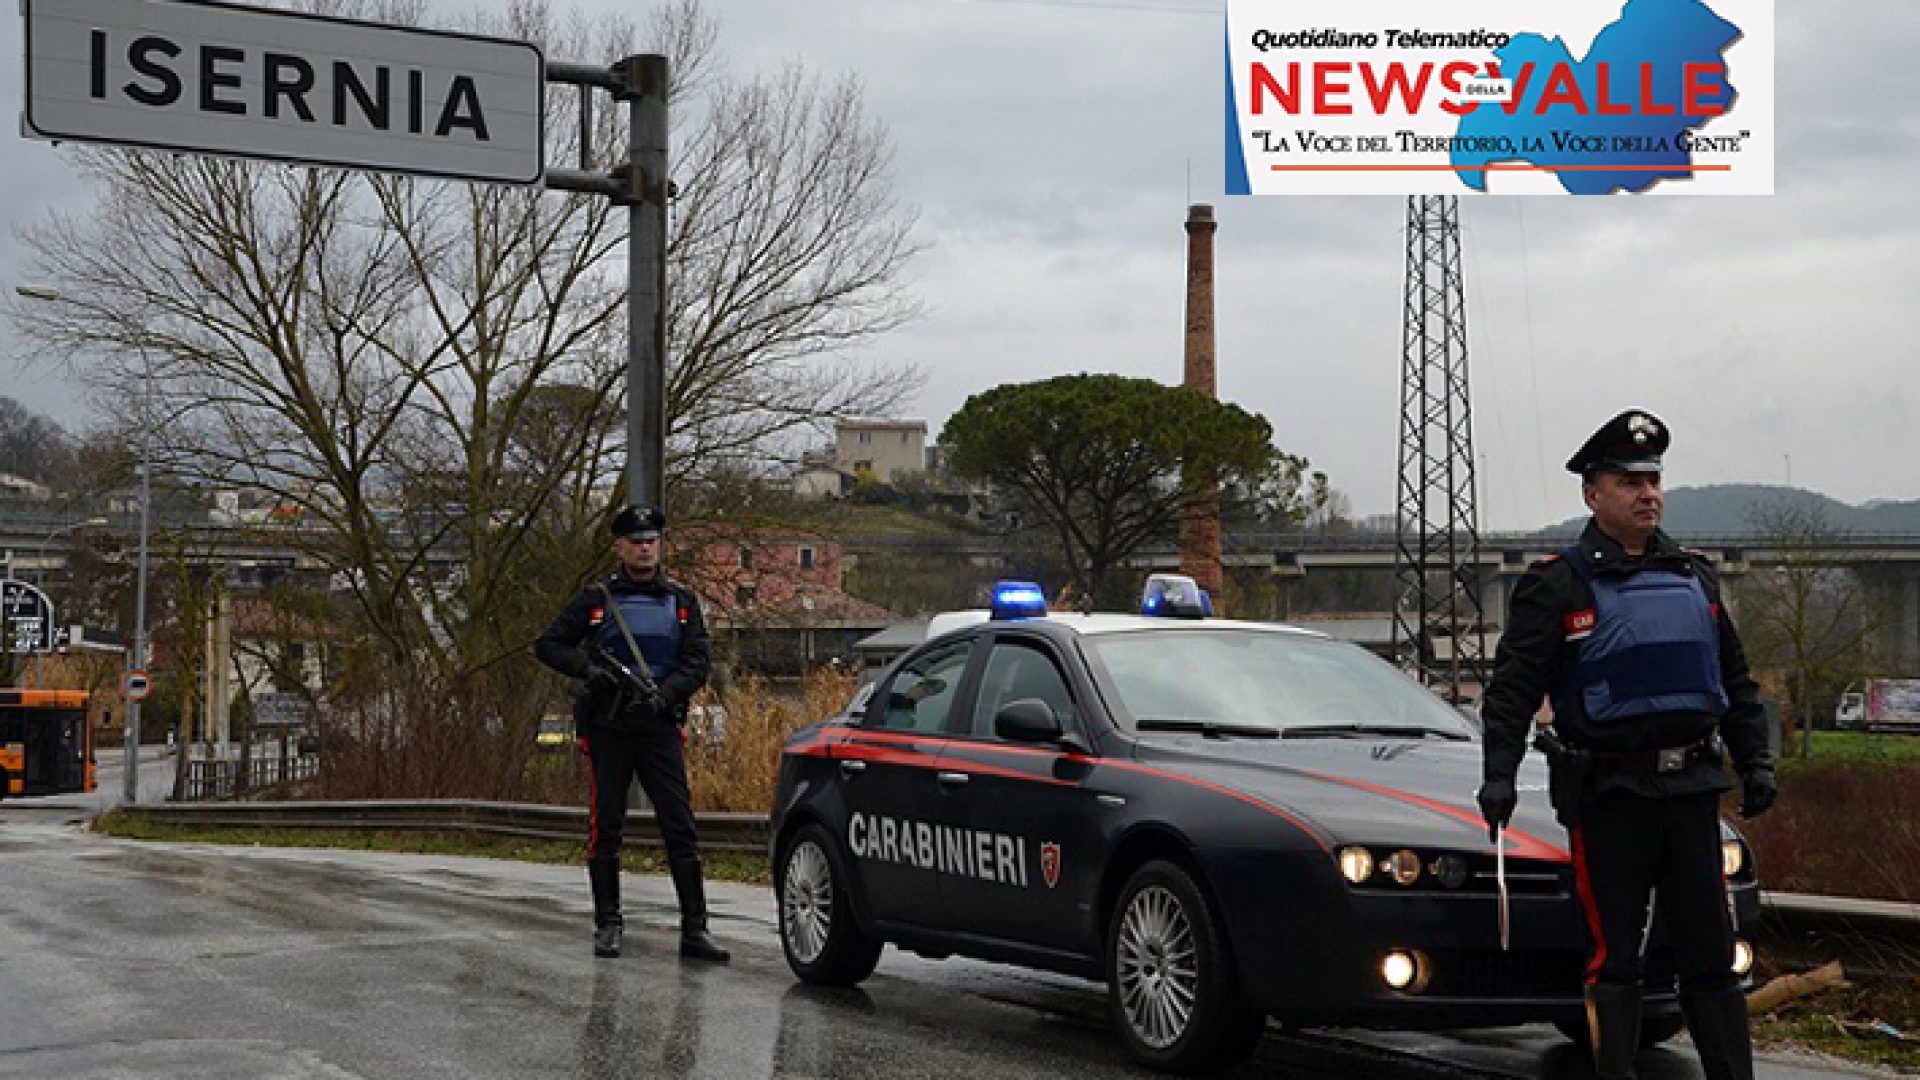 Rionero Sannitico: i Carabinieri beccano un cuoco “stupefacente”. Un giovane operatore della ristorazione beccato alla guida con droga.